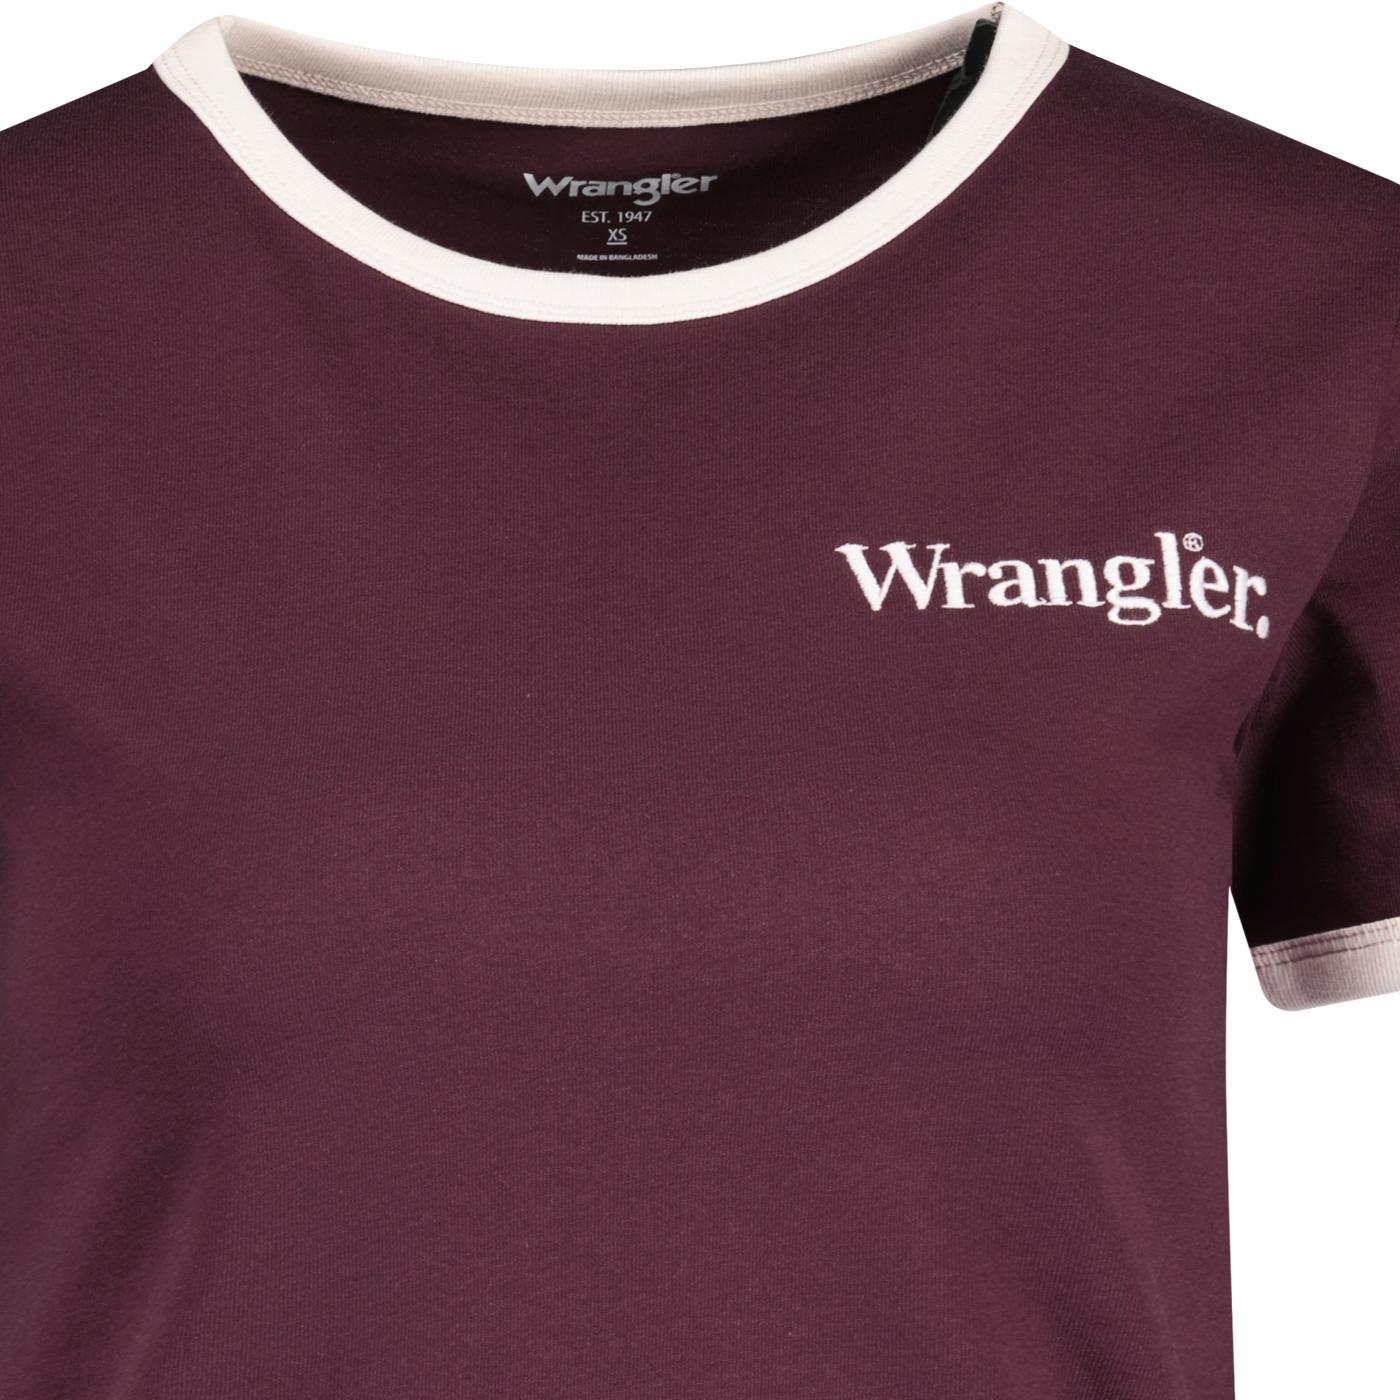 Wrangler Women's Relaxed Retro Ringer Jersey T-shirt in Dahlia